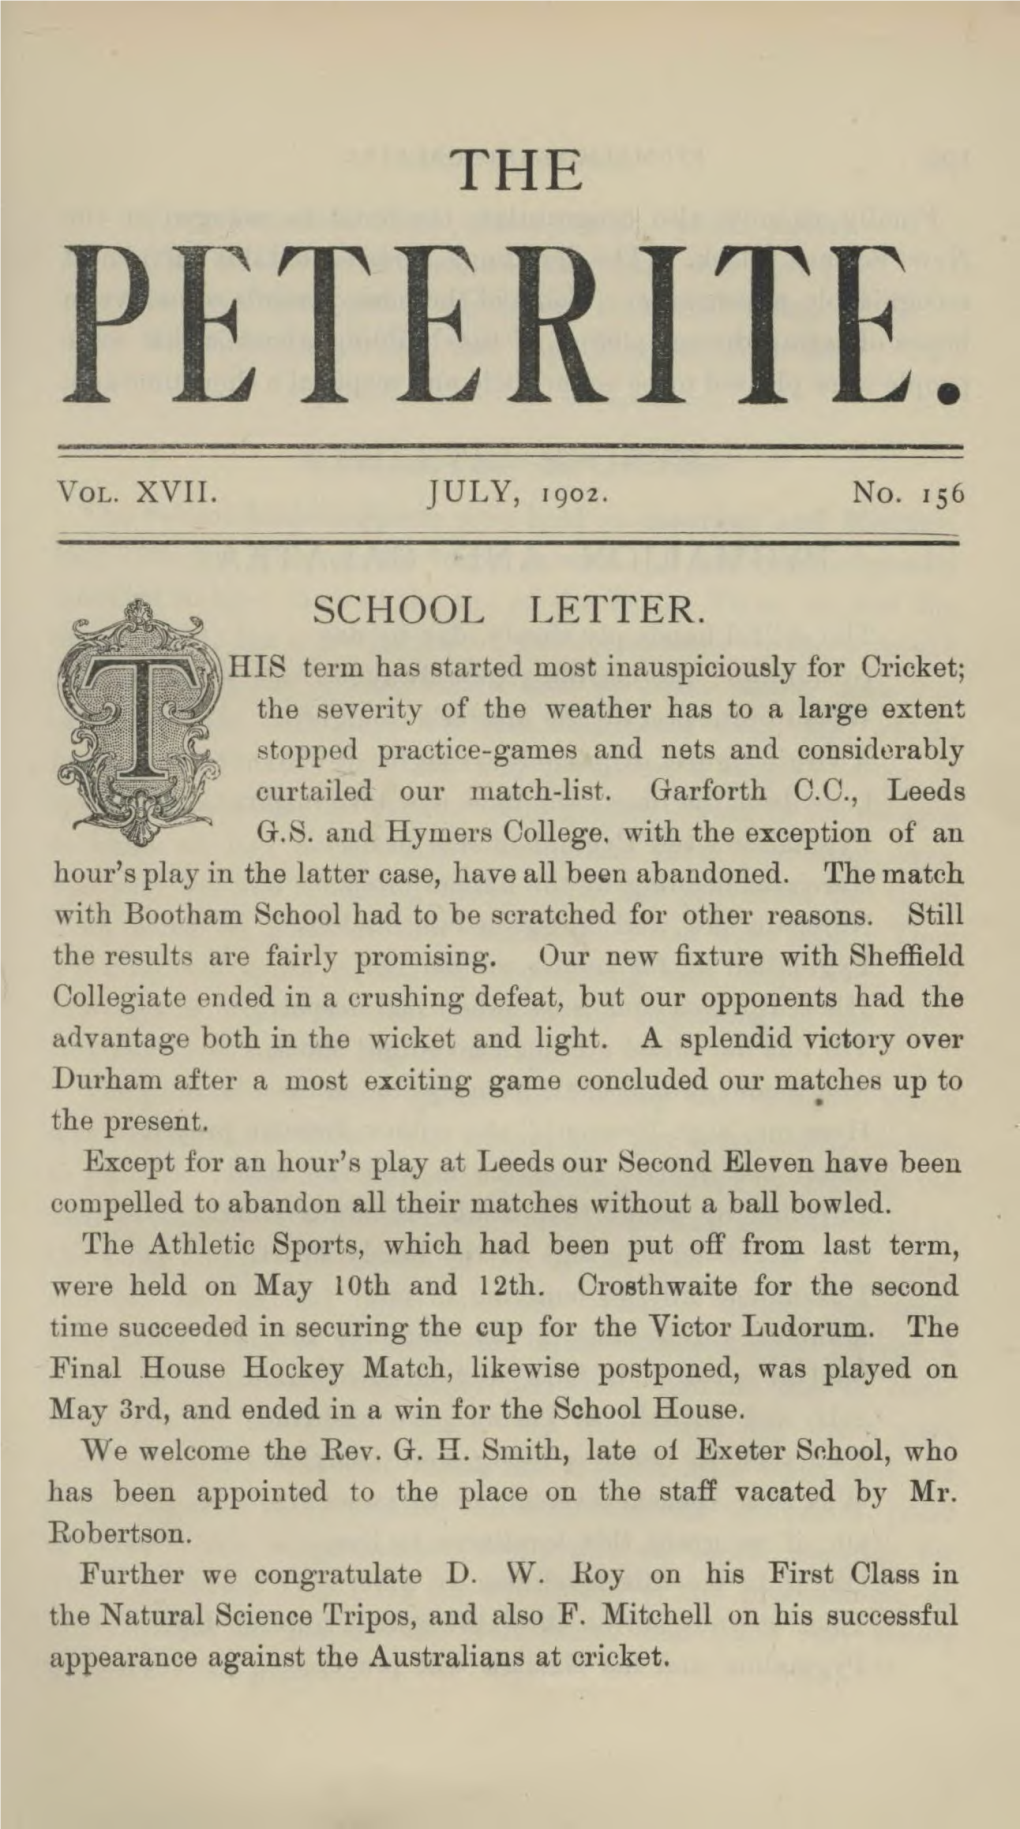 School Letter